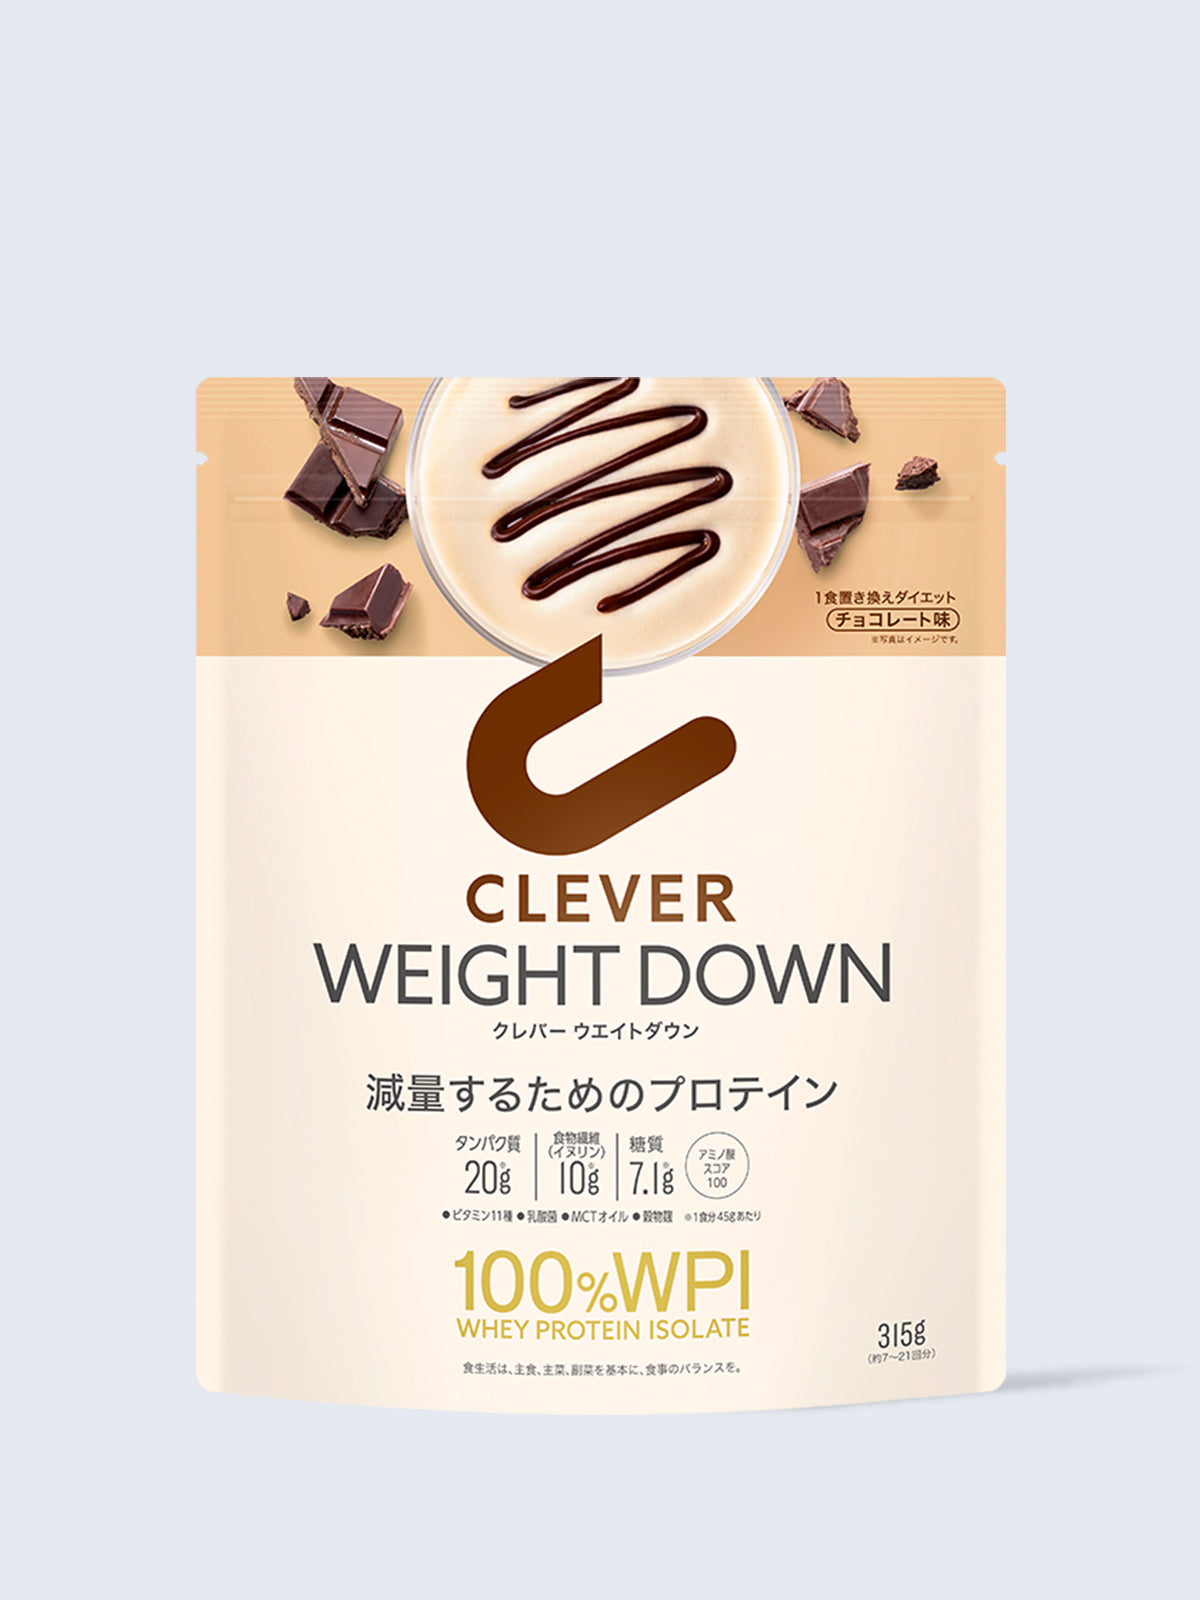 プロテイン [1食置き換えダイエット 100%WPI] チョコレート味 クレバー ウエイトダウン 315g